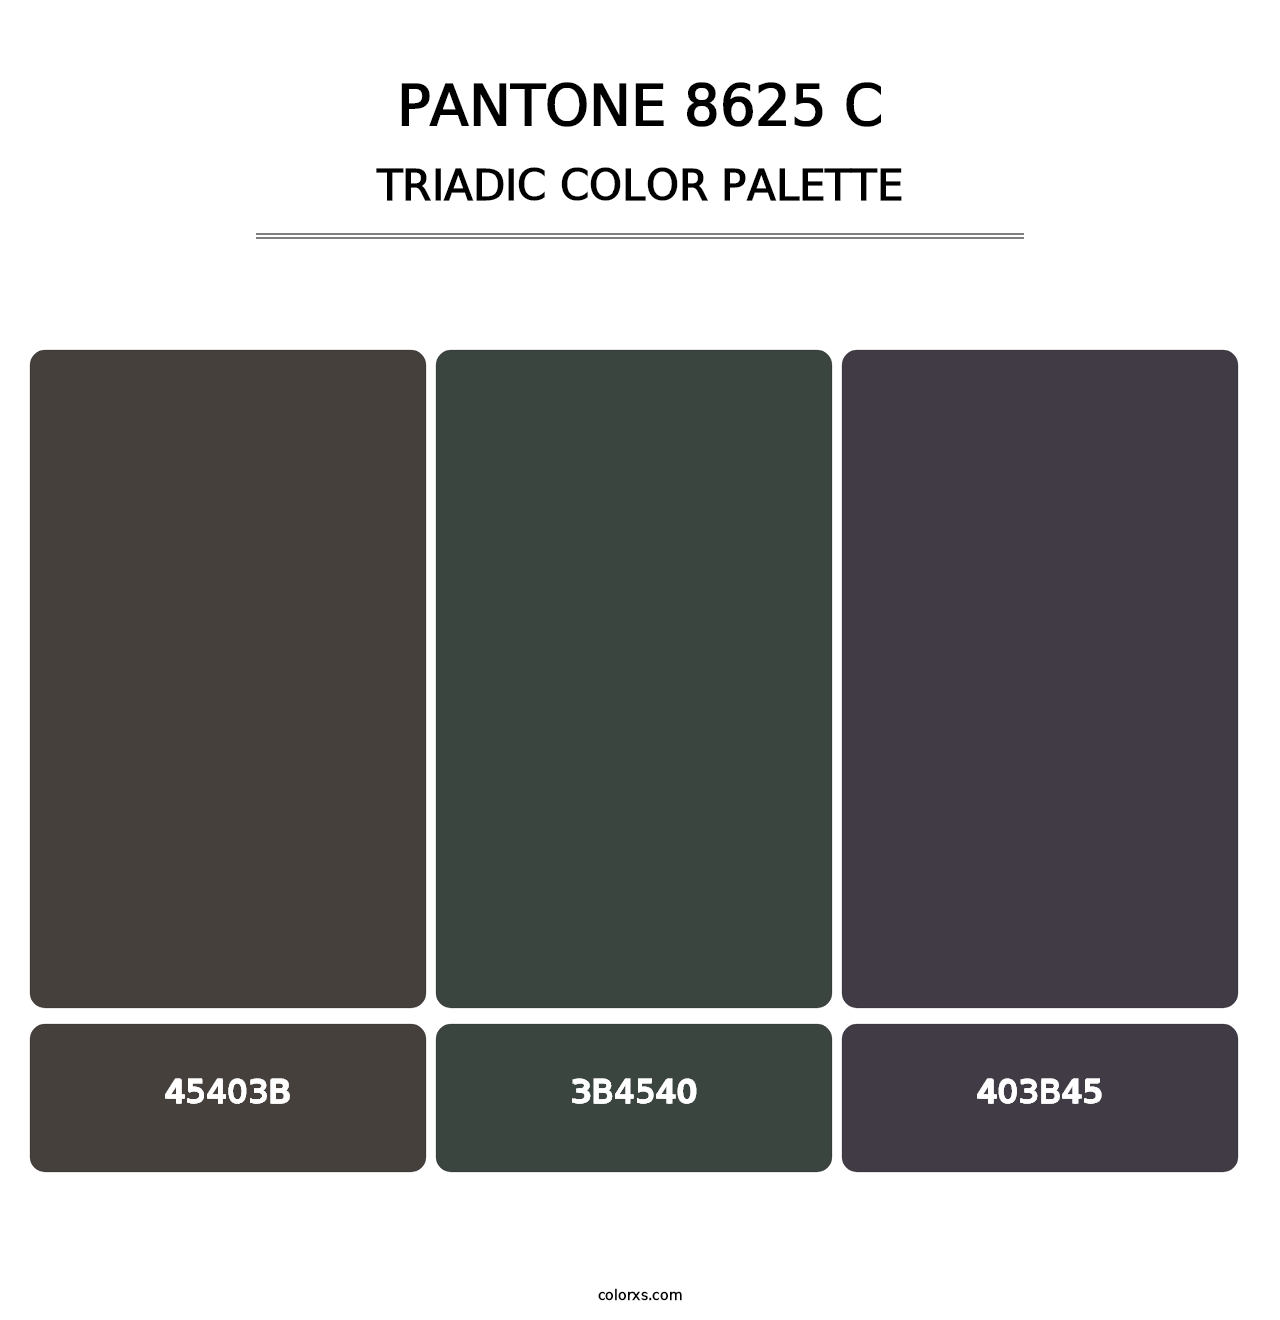 PANTONE 8625 C - Triadic Color Palette